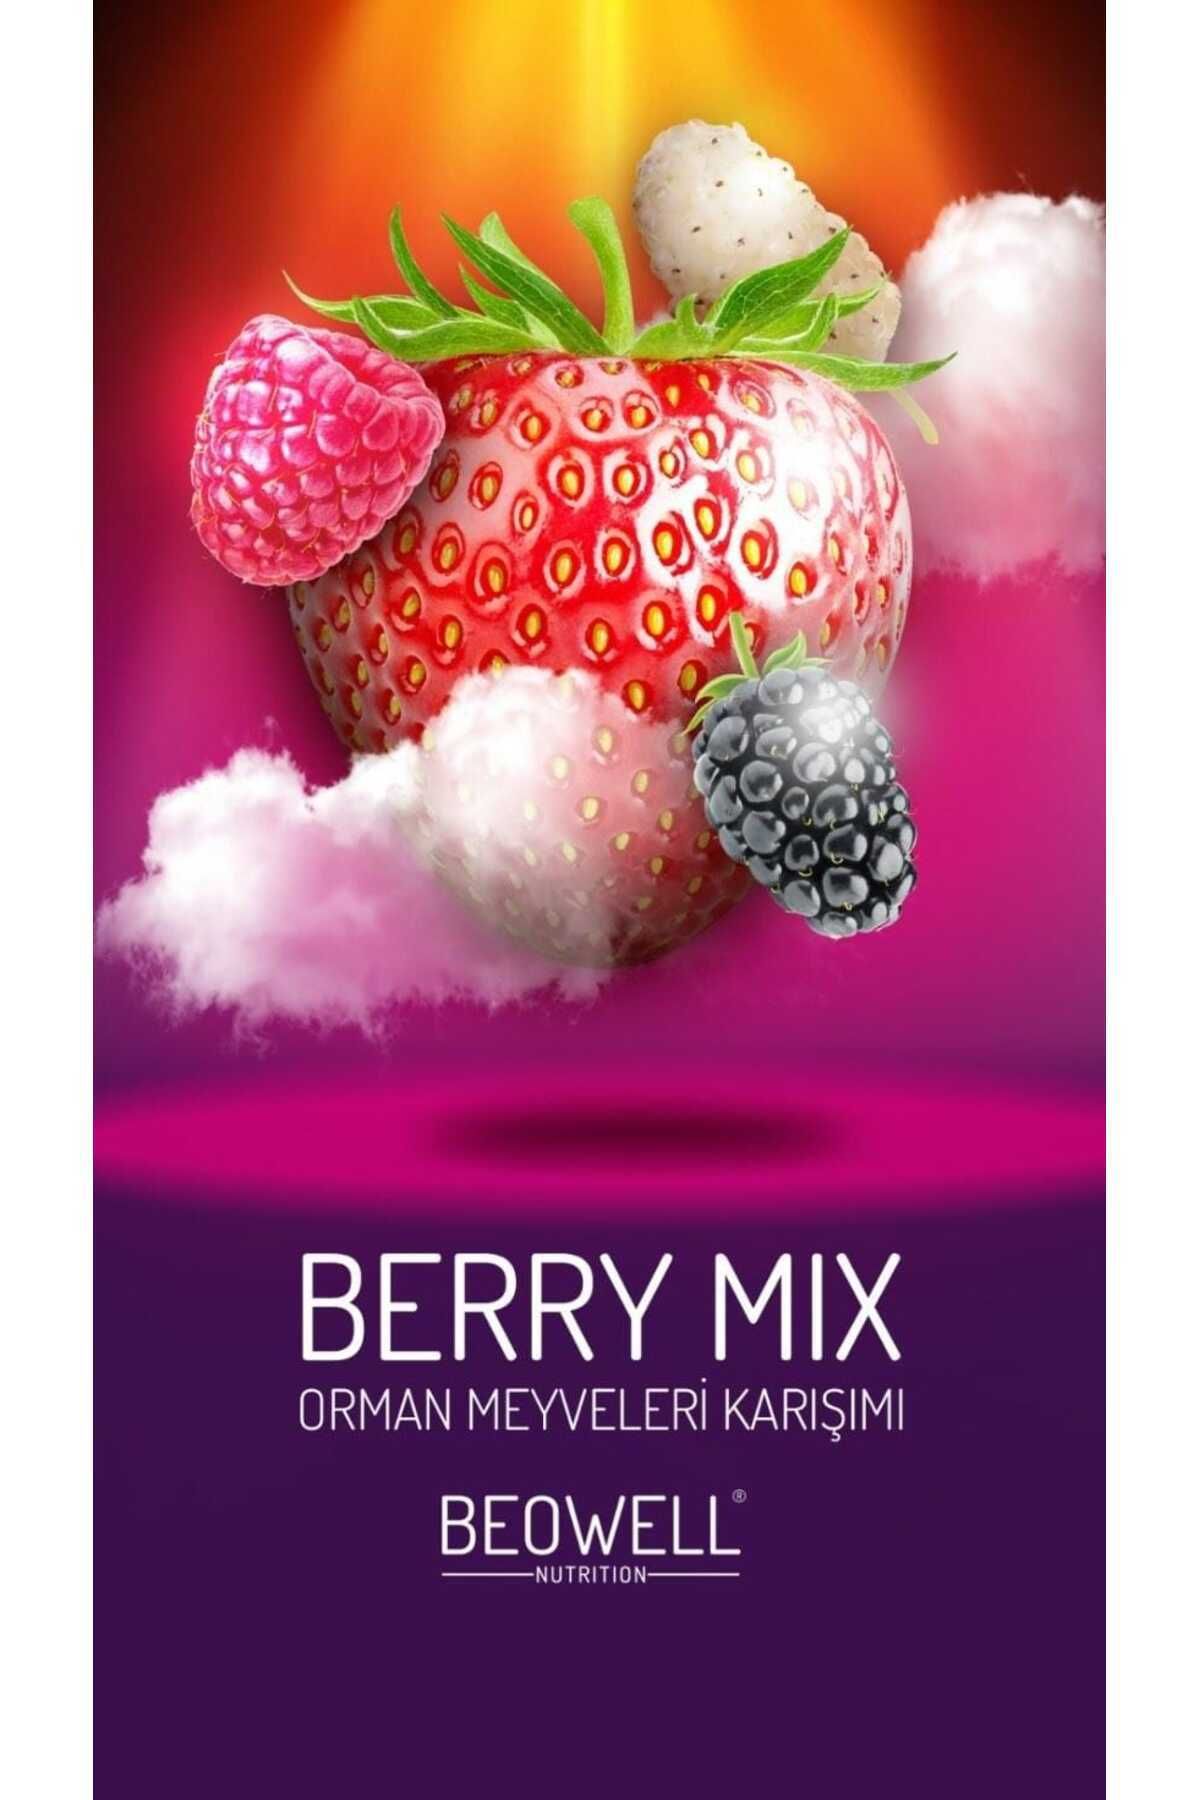 BEOWELL Berry Mix Meyve Cipsi 40gr - Dondurularak Kurutulmuş - Freeze Dried Çıtır Meyveler Karışımı